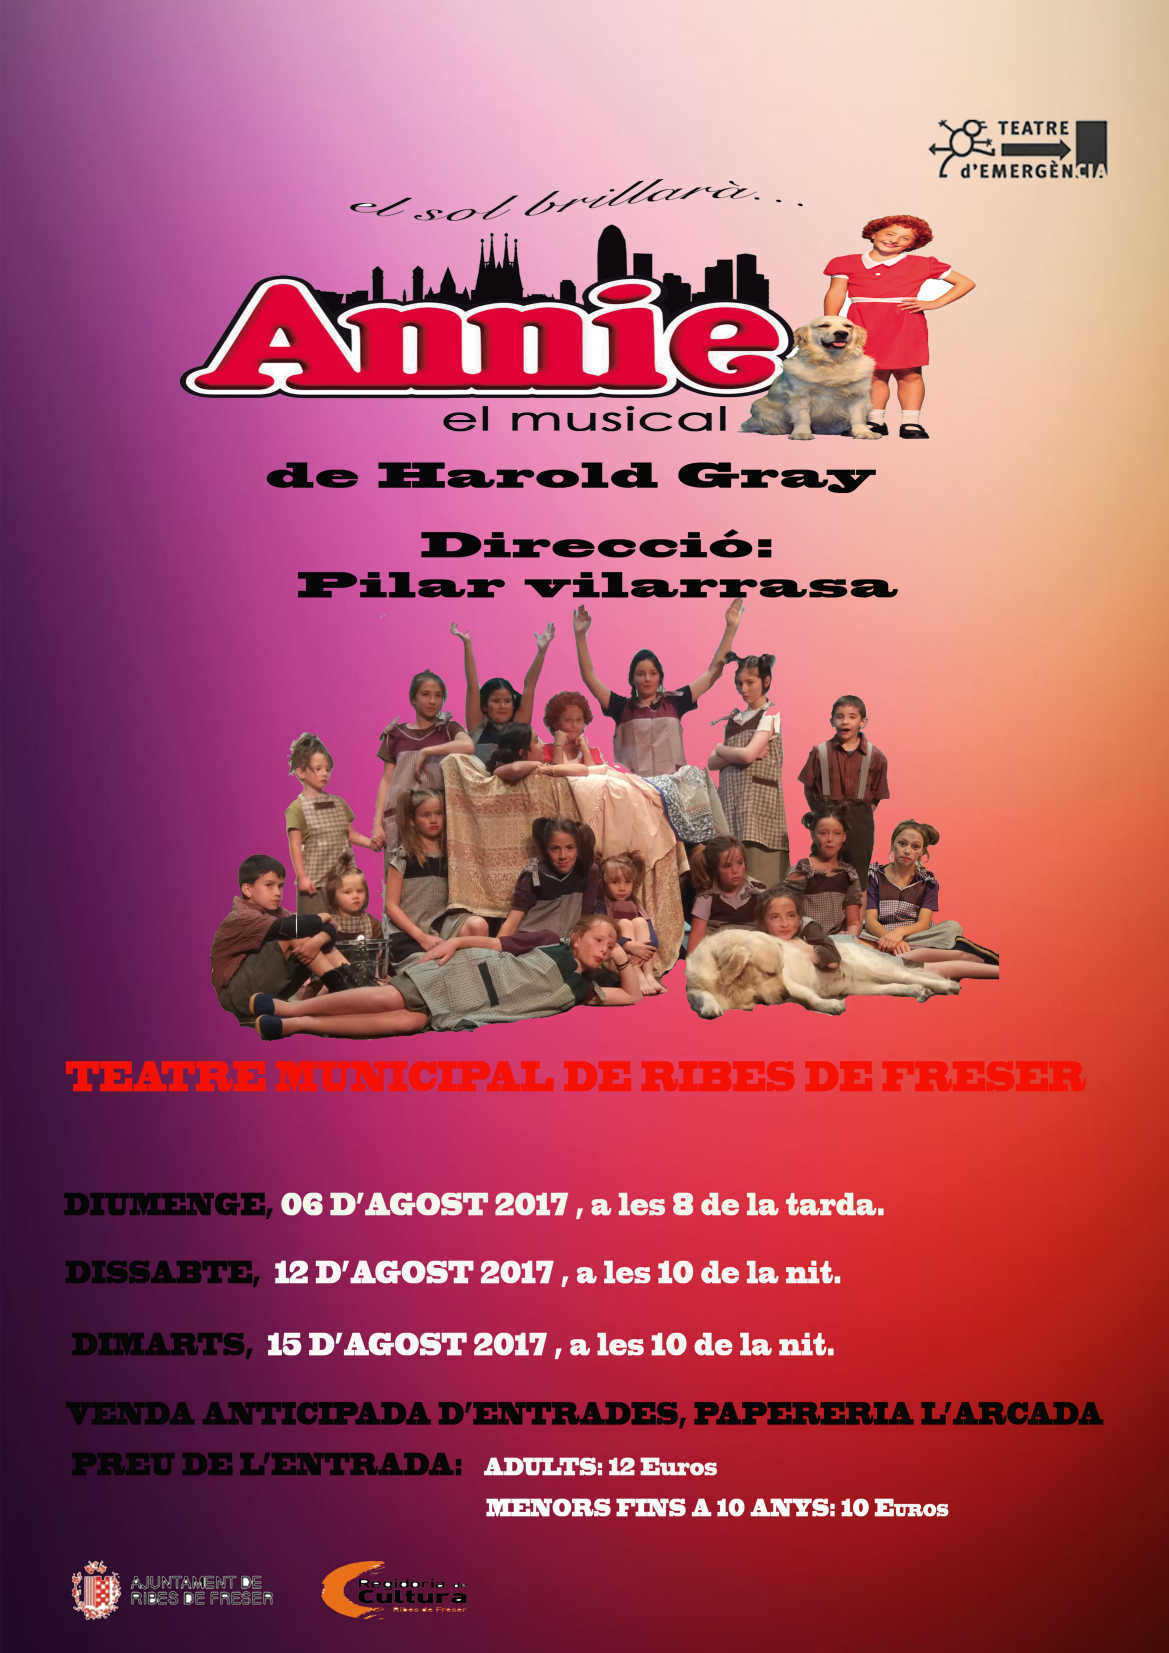 Annie, el musical de Teatre d'Emergència